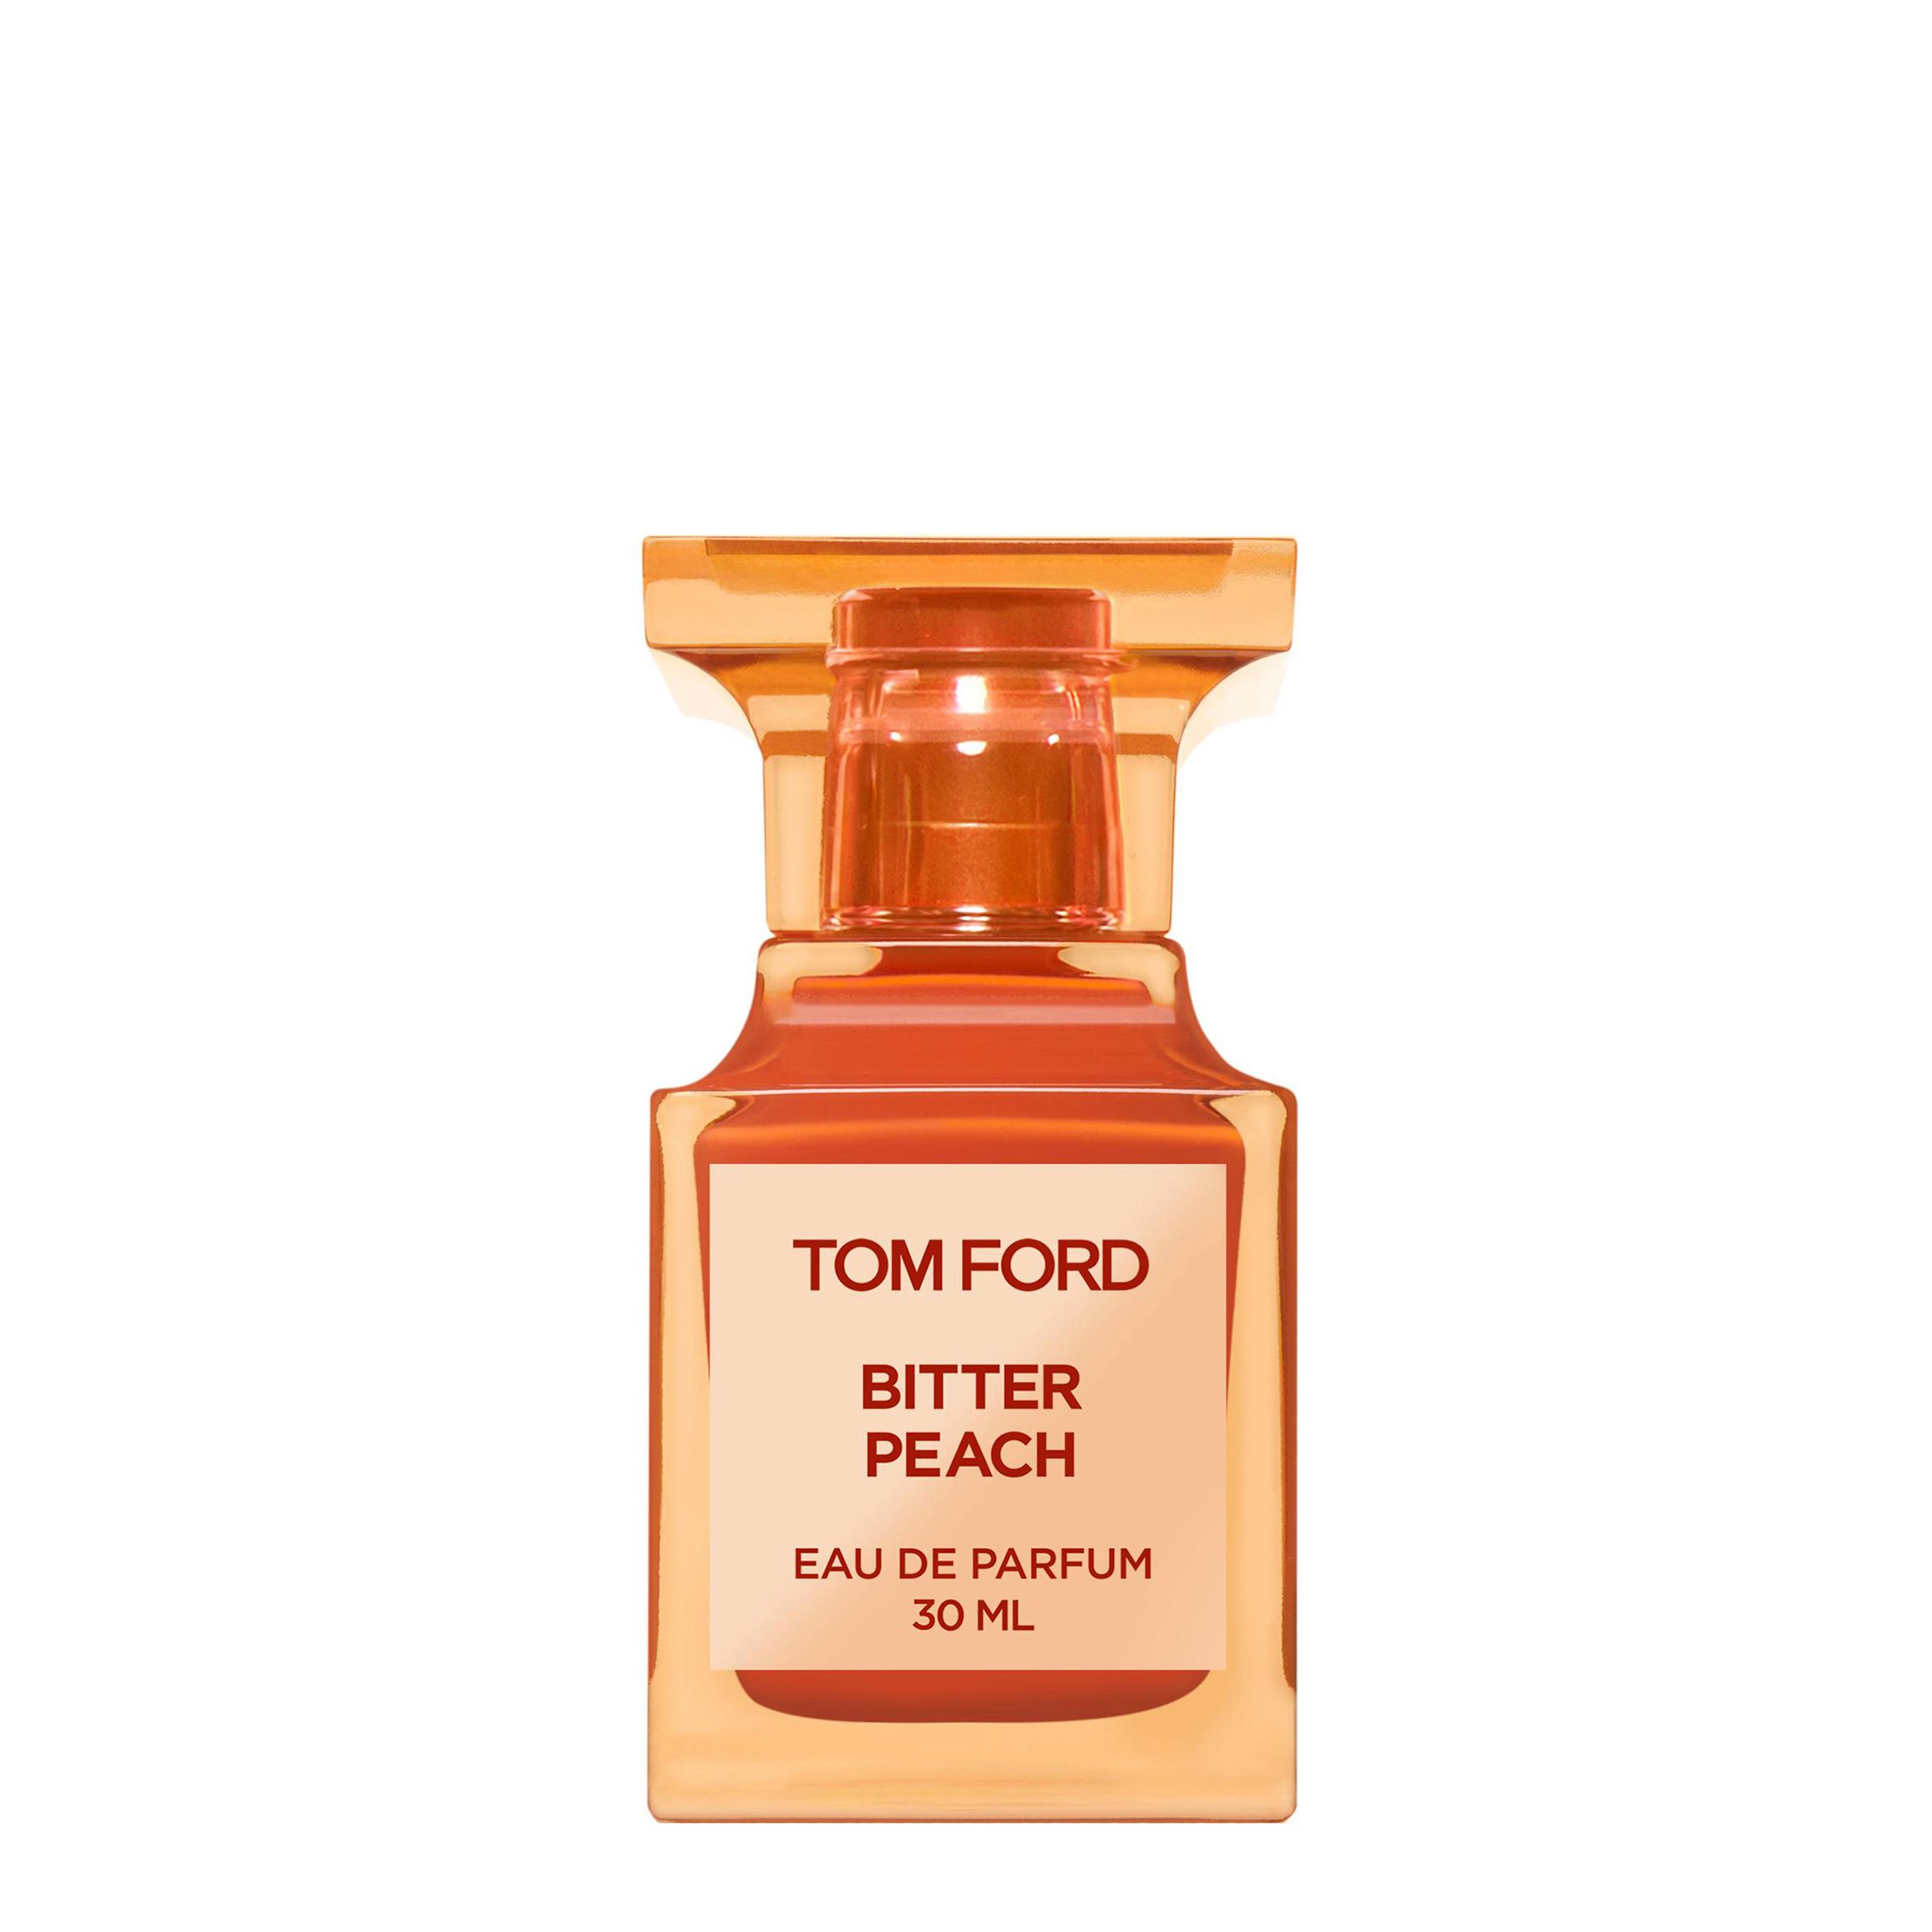 Вода парфюмерная Tom Ford Bitter Peach, унисекс, 30 мл лосьон peach elixir женский парфюмированный по мотивам bitter peach tom ford 100 мл